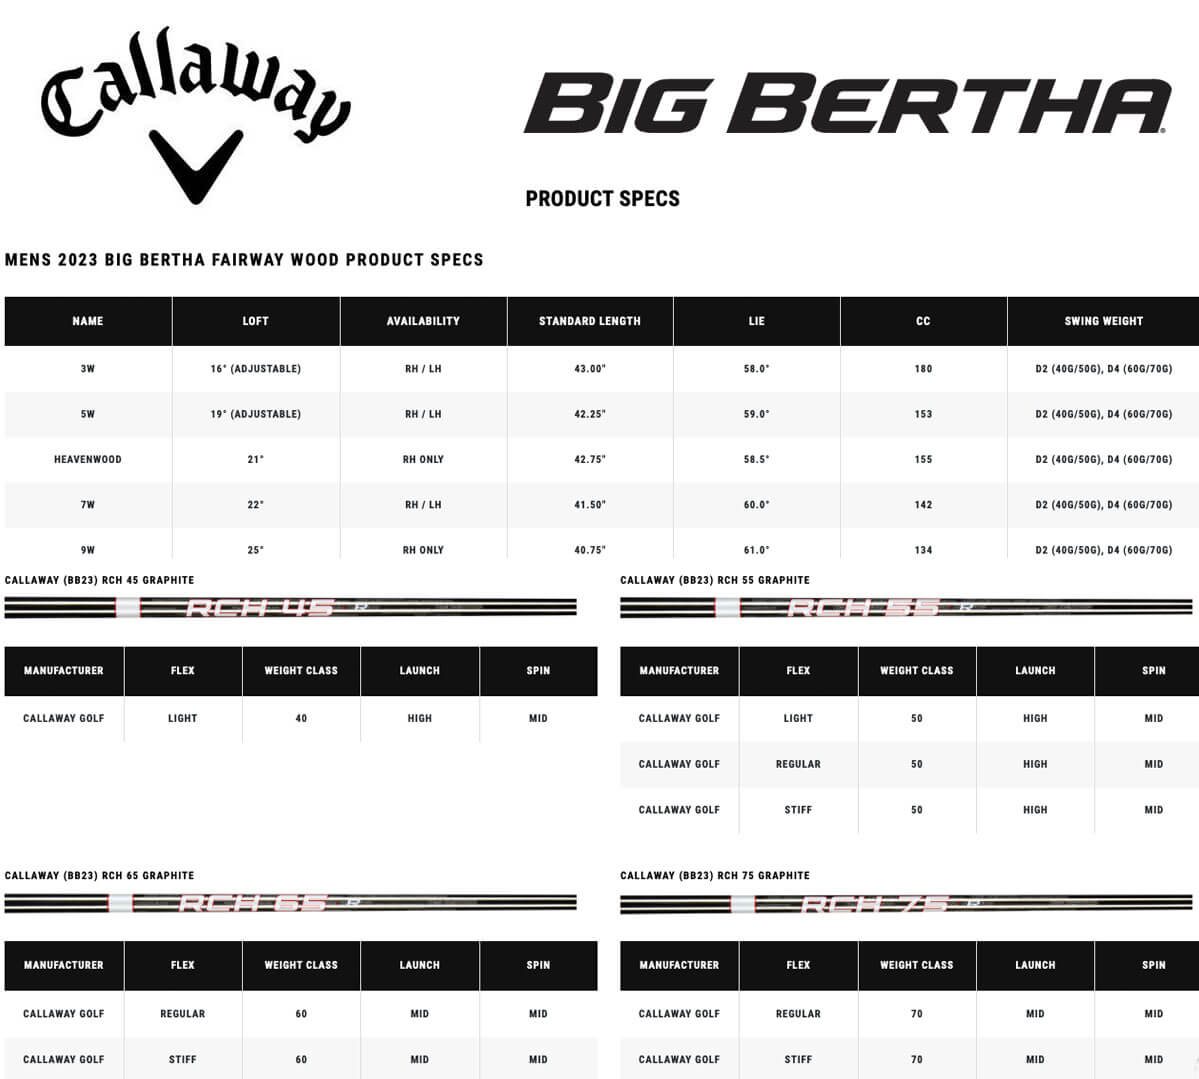 Specification for Callaway Big Bertha Fairway Woods